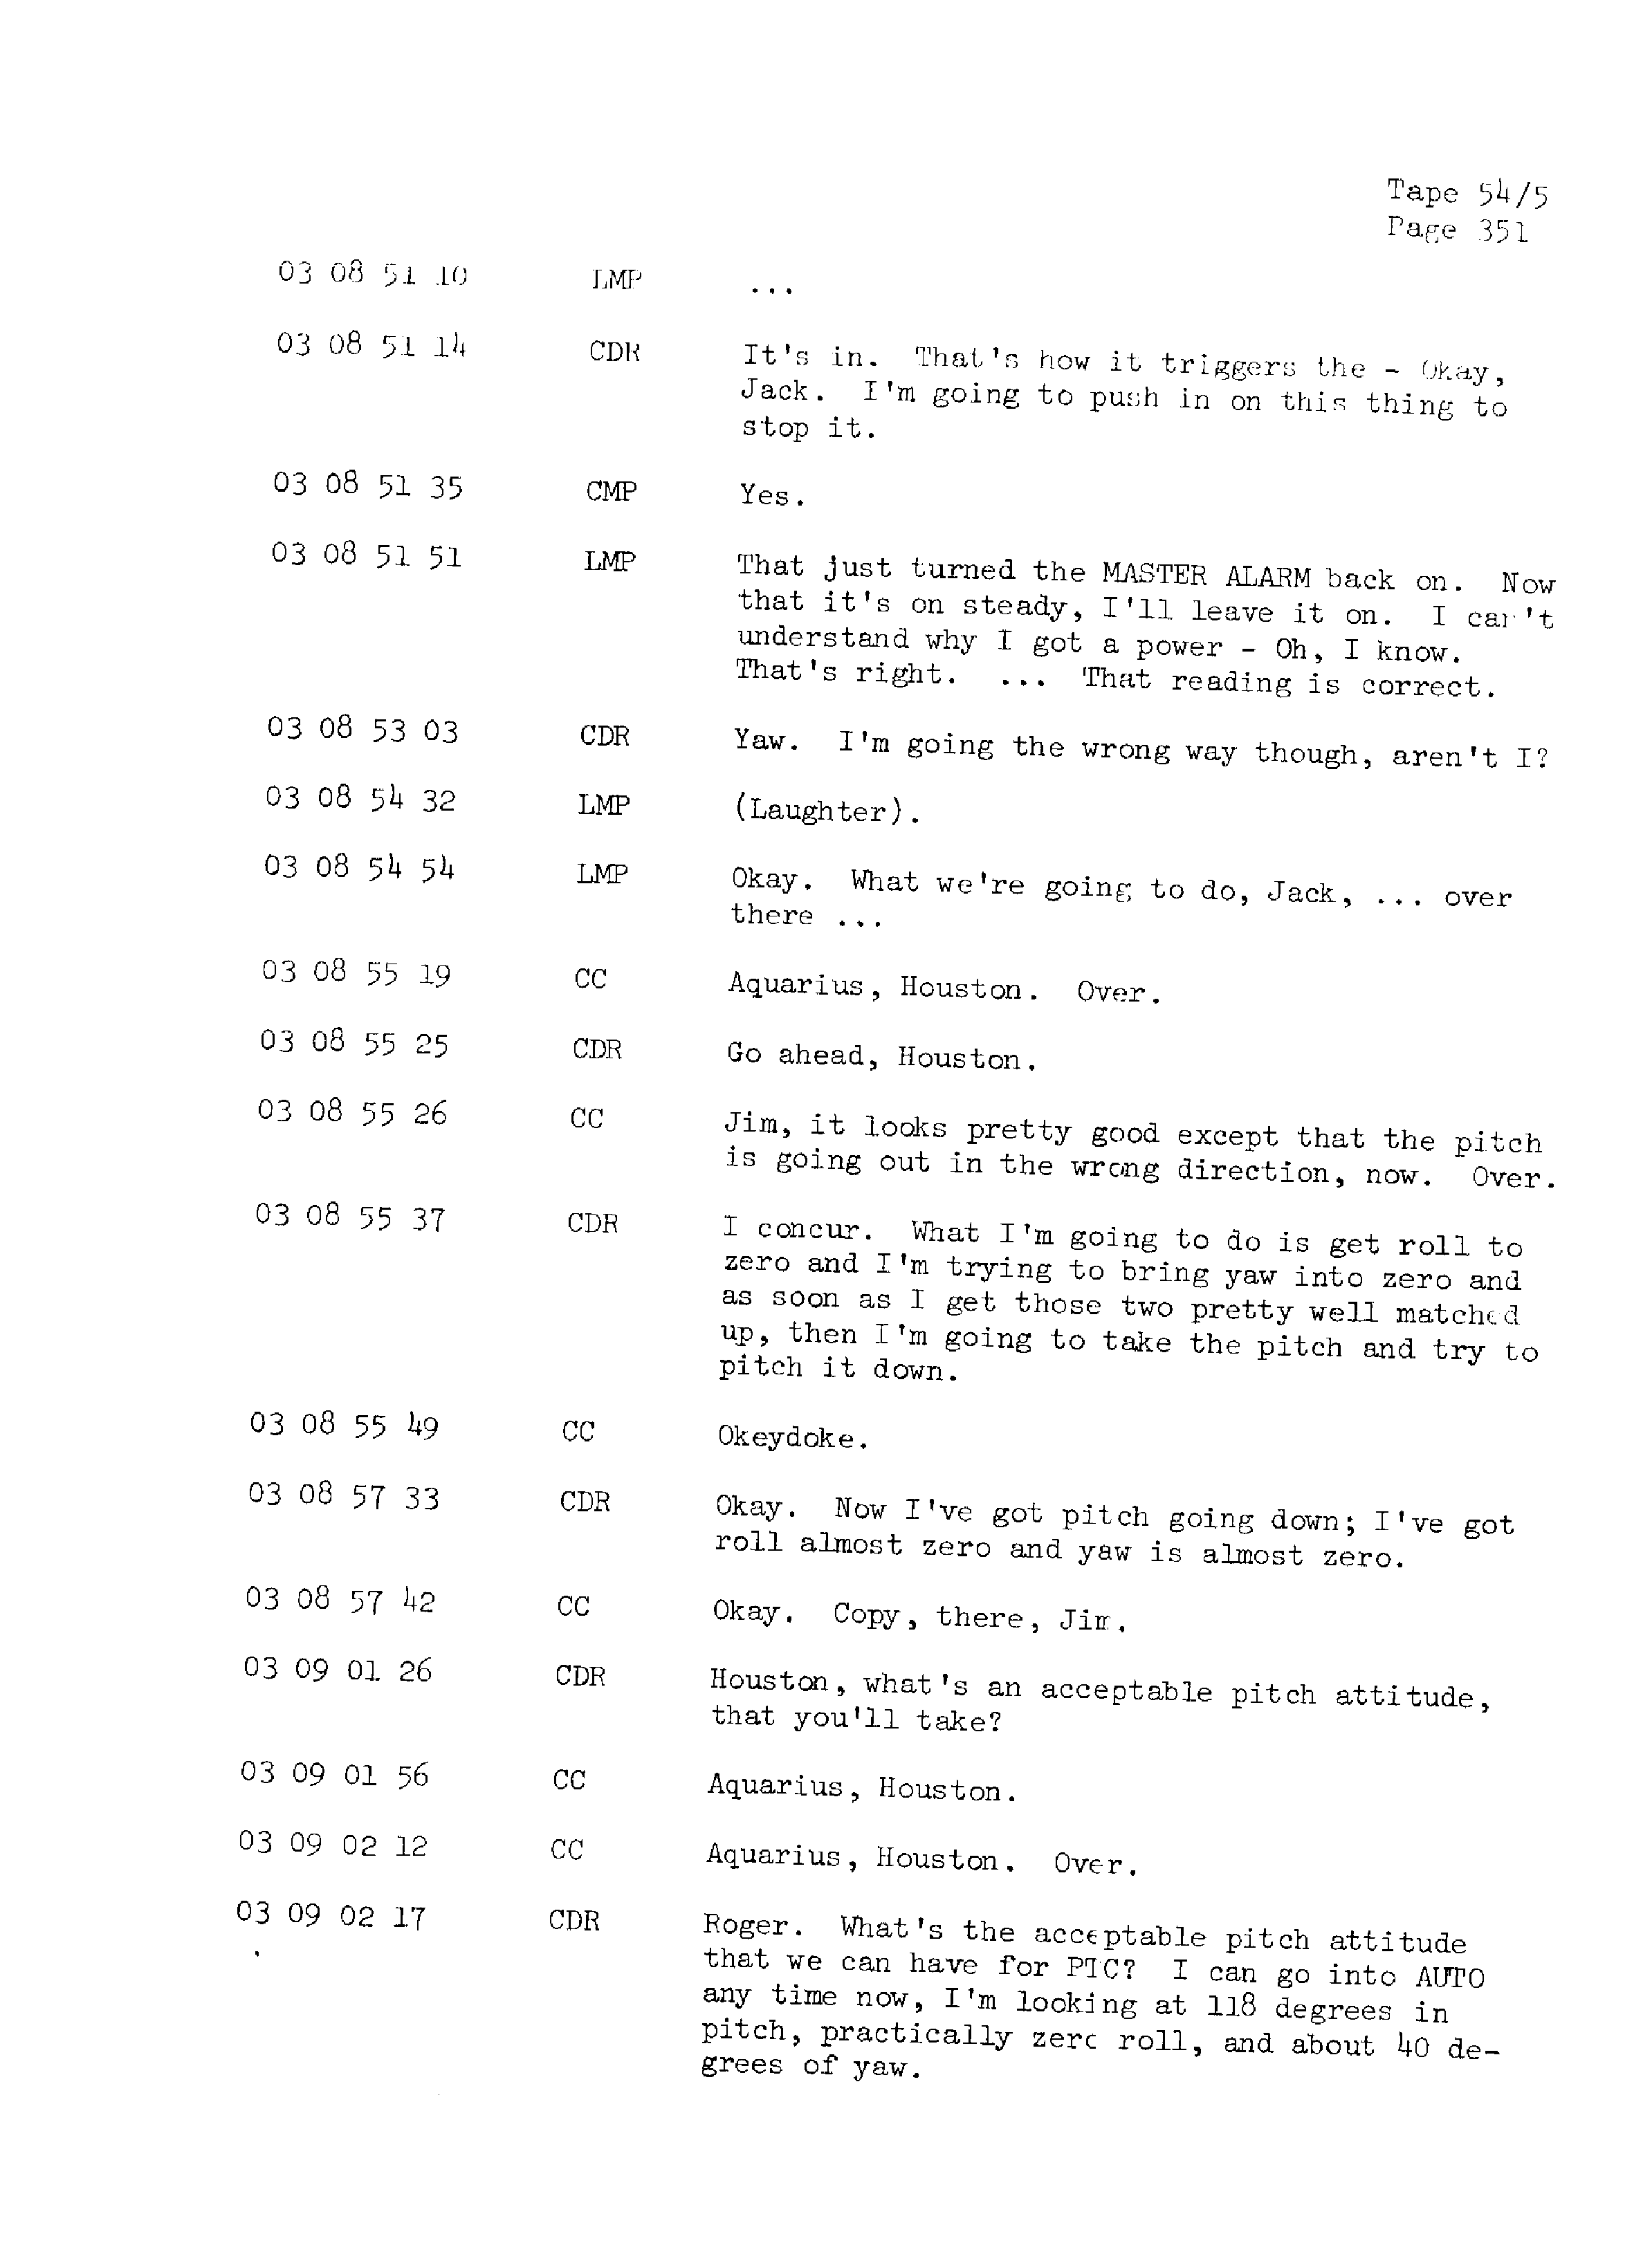 Page 358 of Apollo 13’s original transcript